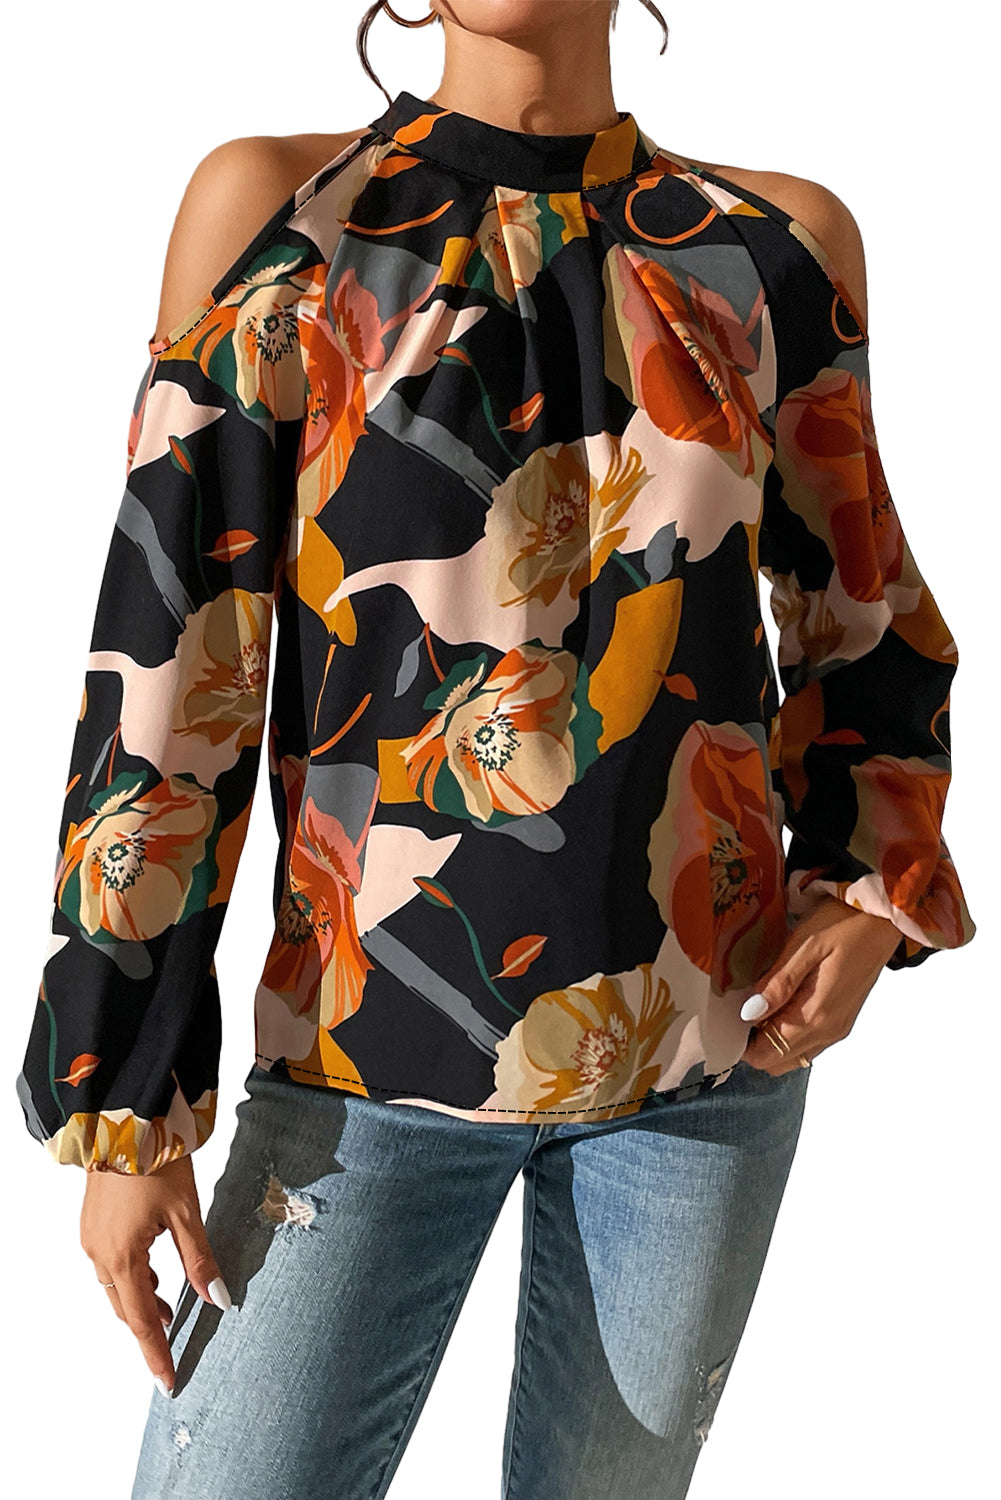 Črna bluza s cvetličnim vzorcem in hladnimi rokavi na ramenih